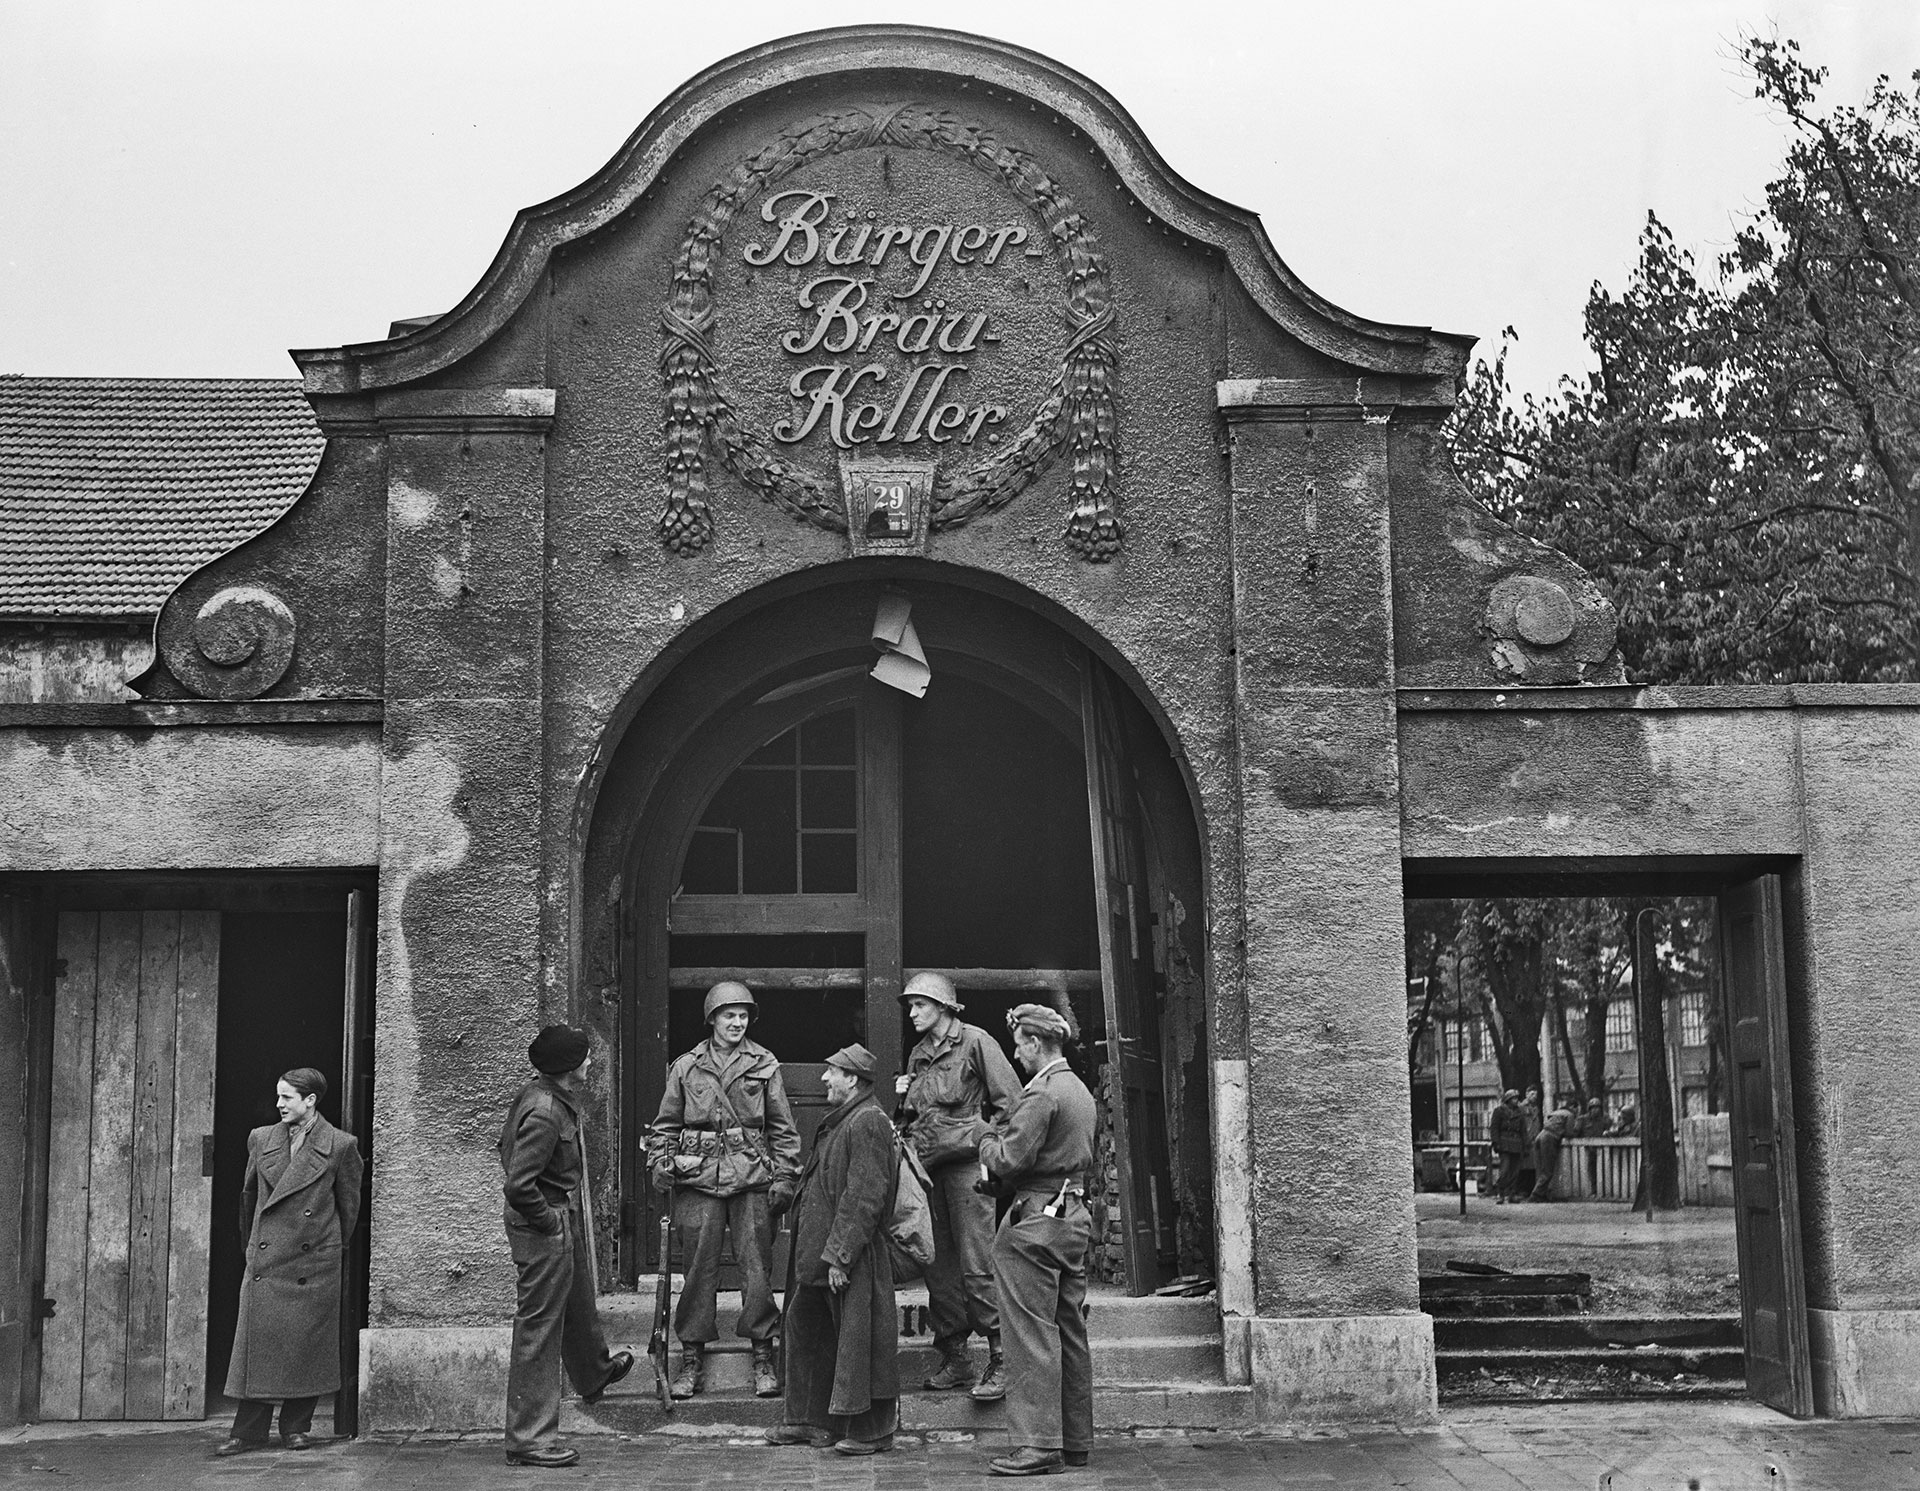 Tropas norteamericanas en el Burgerbraukeller Beer hall de Munich en 1945, poco después de la rendición nazi. El lugar fue donde Hitler lanzó el golpe de estado en 1923 que lo llevó a prisión (Photo by Fred Ramage/Keystone/Hulton Archive/Getty Images).